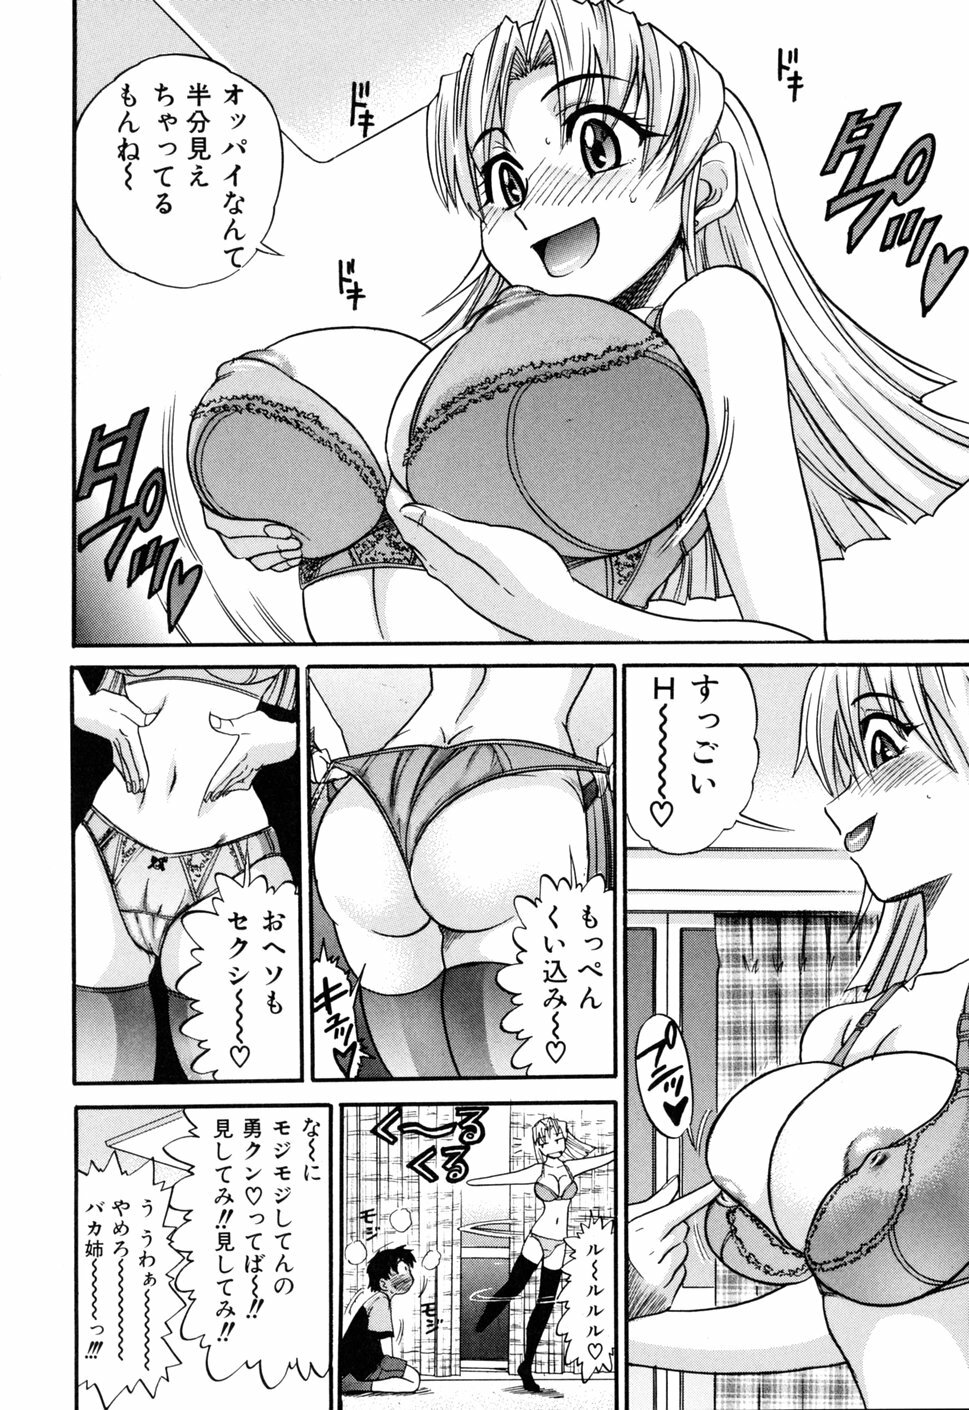 [DISTANCE] Ochiru Tenshi Vol. 1 page 18 full